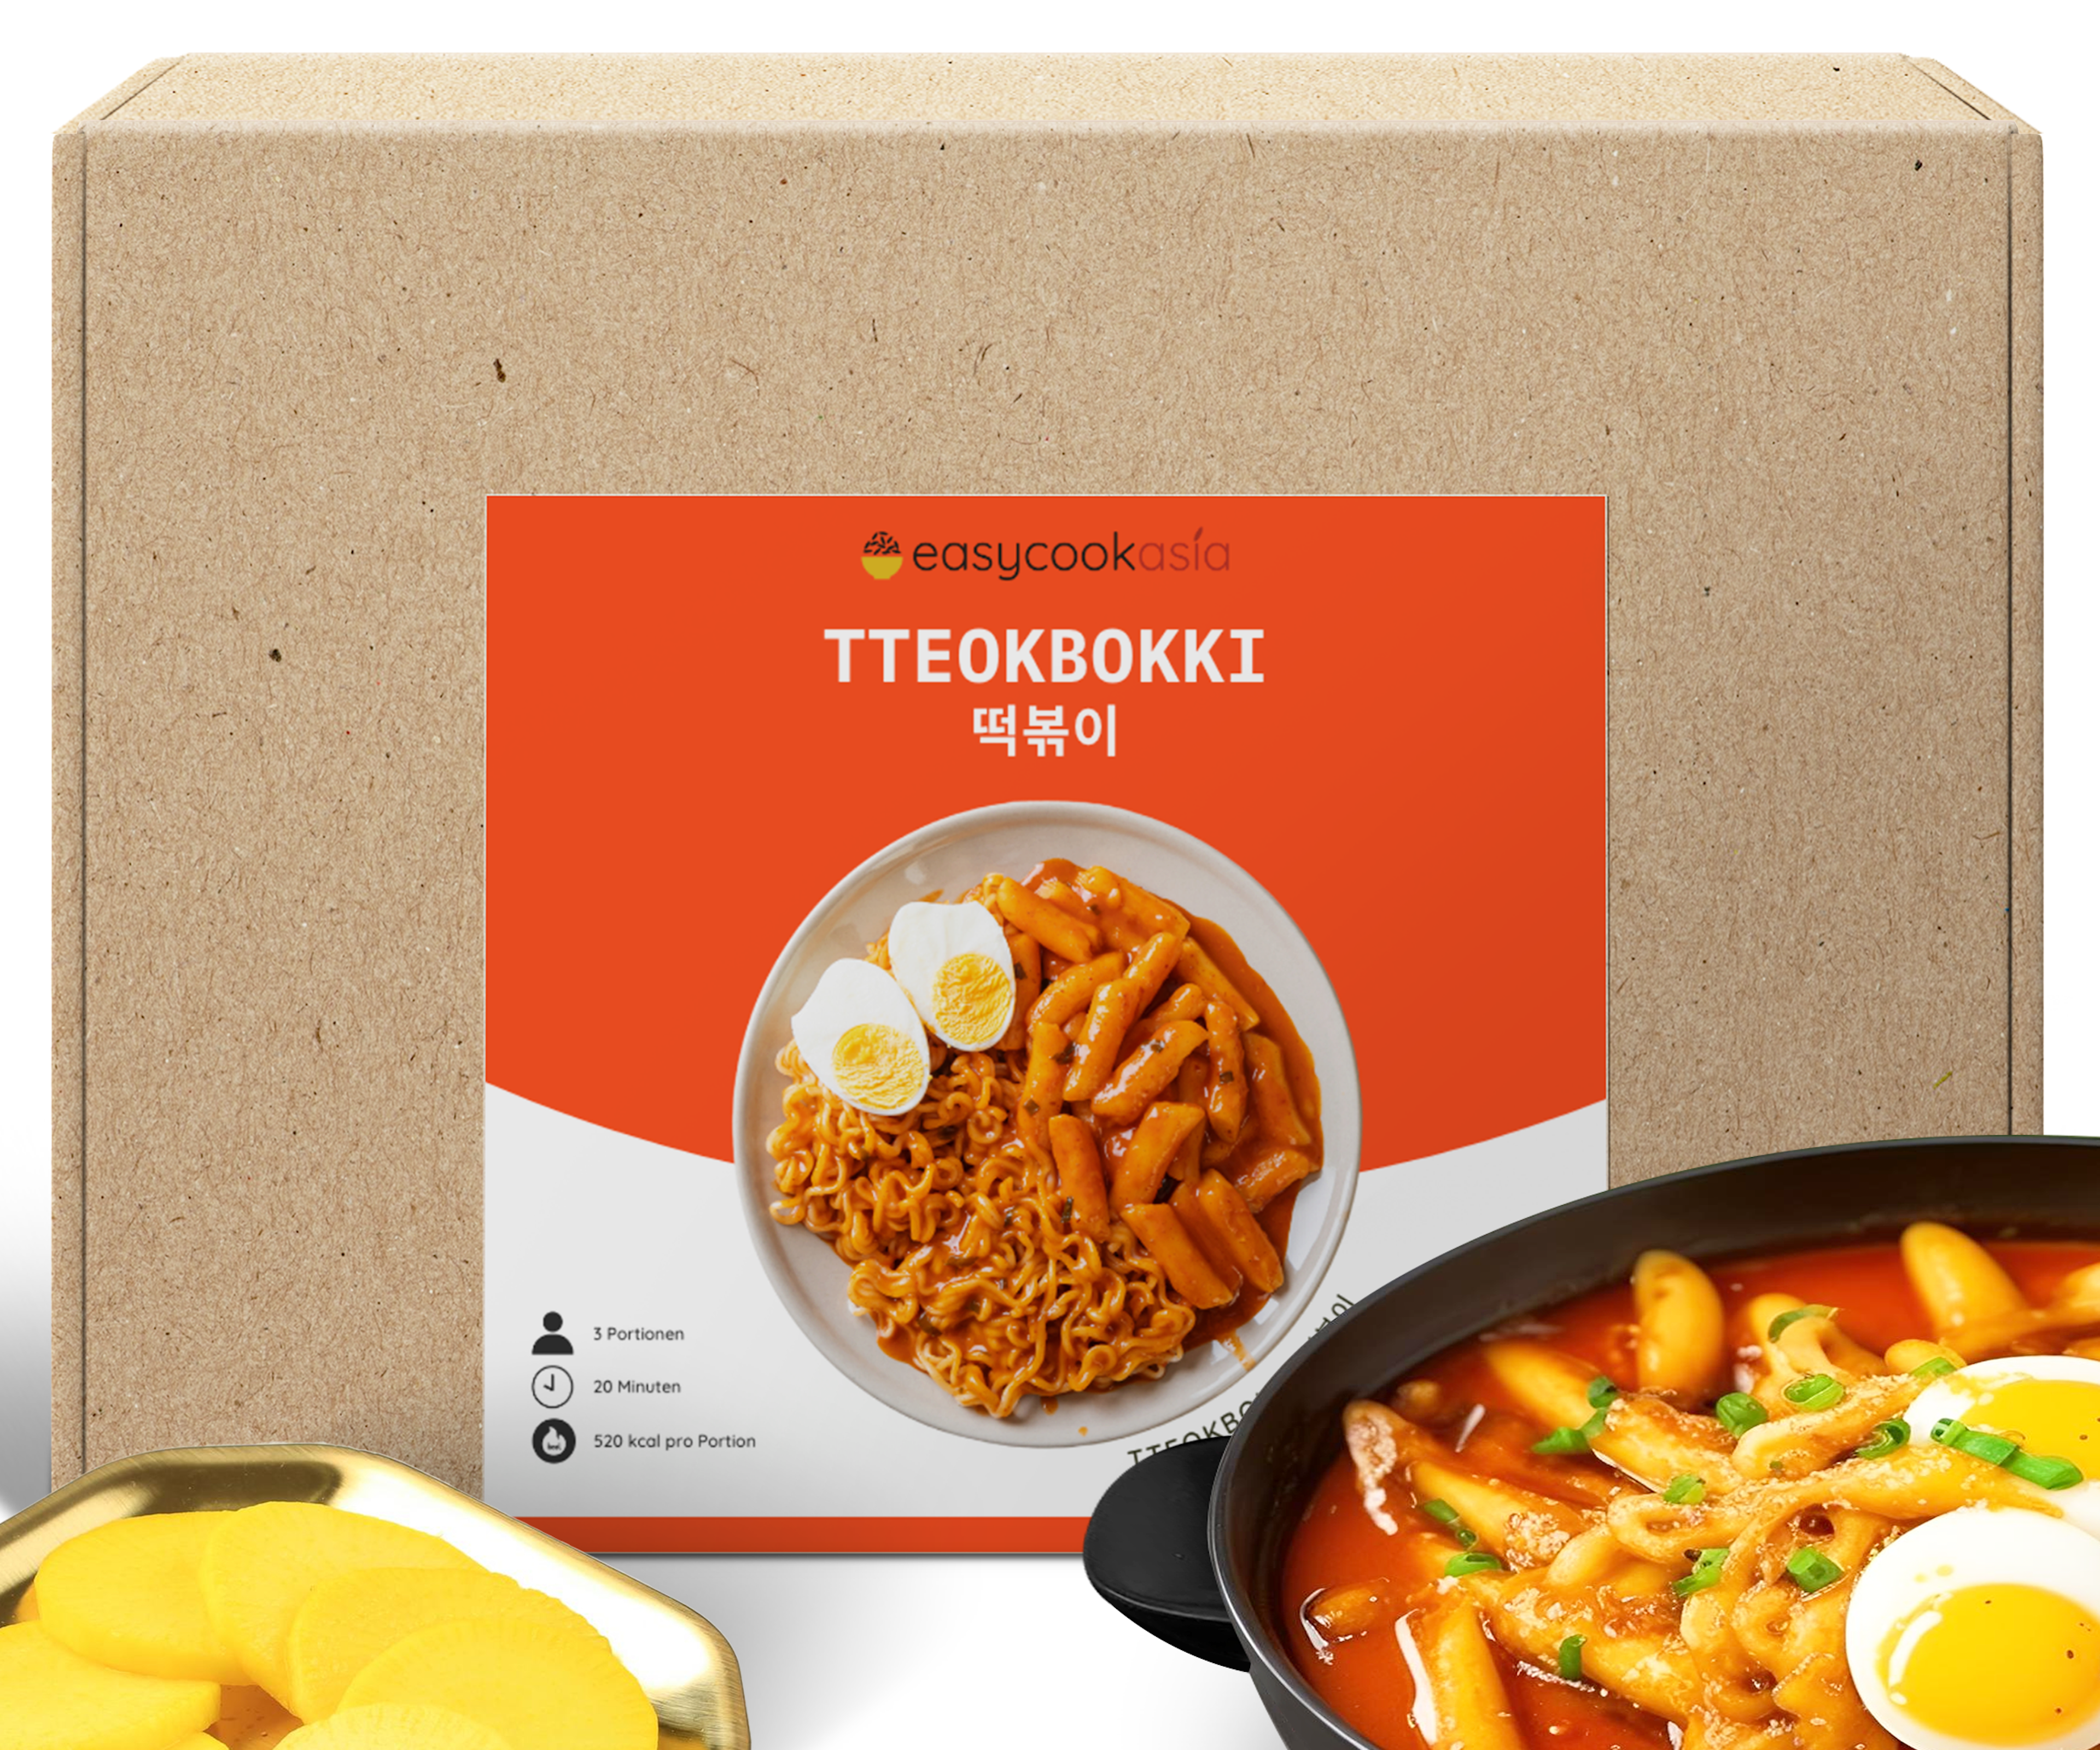 Vorderansicht der Tteokbokki Box: Zeigt die Verpackung und den Inhalt, einschließlich der Reiskuchen und der Gochujang-Sauce.